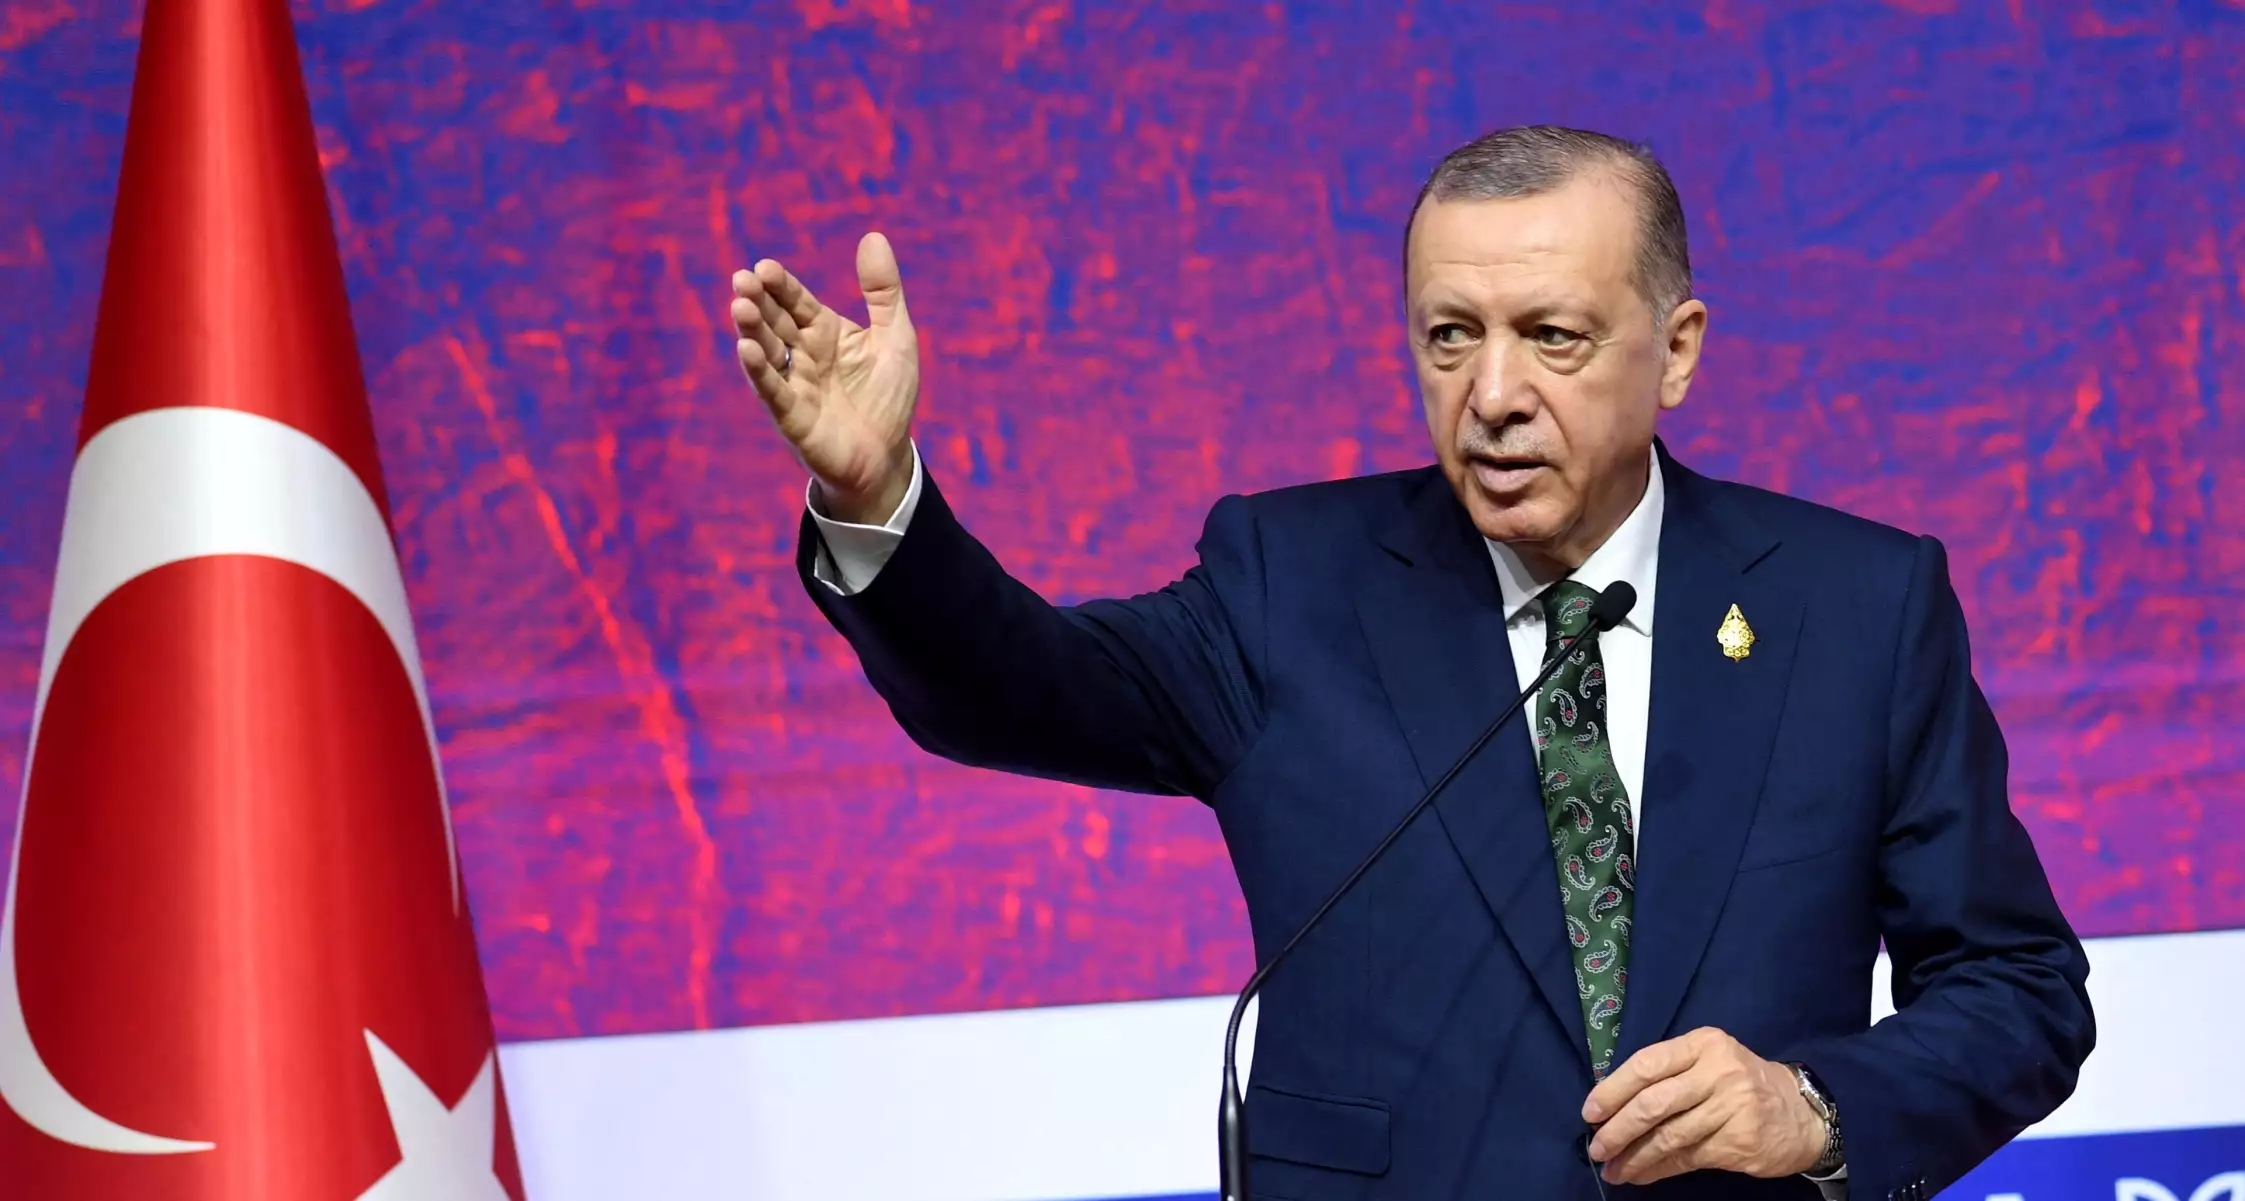 Τουρκικά ΜΜΕ για κυβέρνηση Ρ.Τ.Ερντογάν: «Το καράβι βουλιάζει»